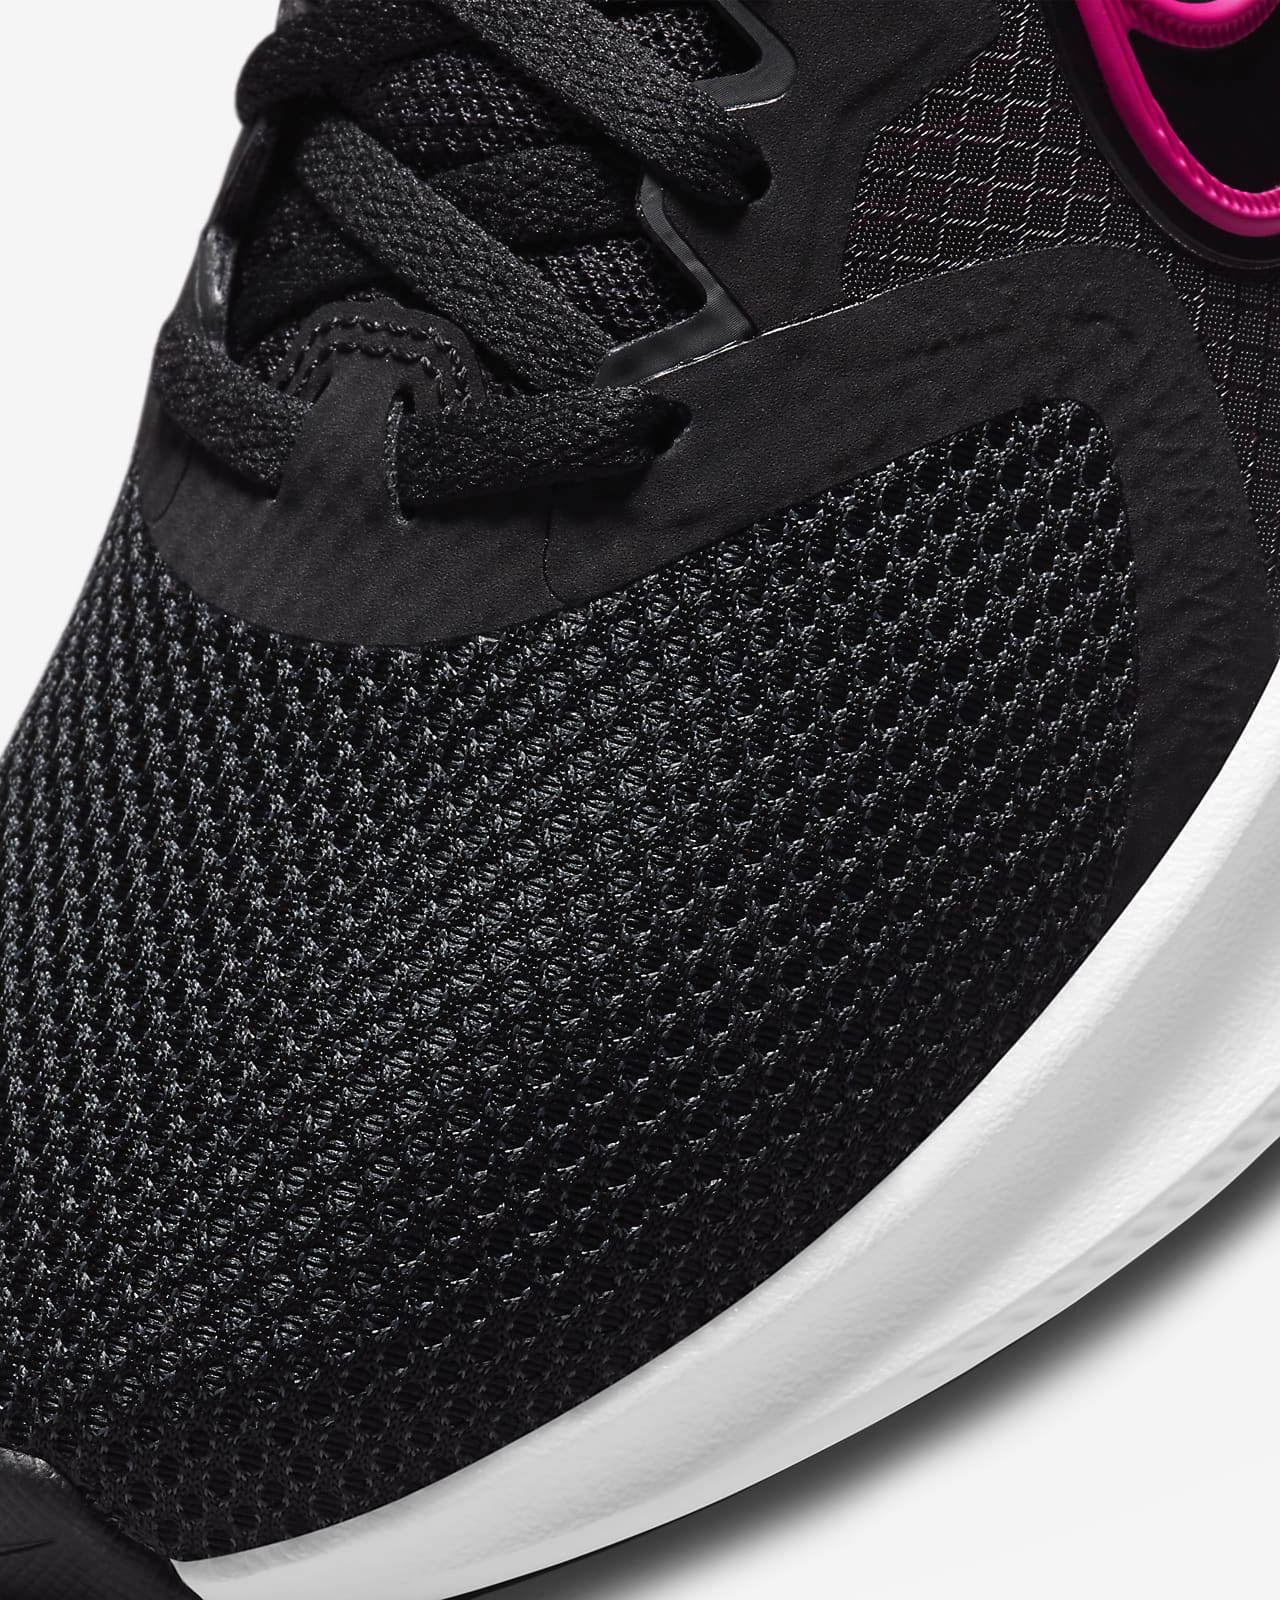 Chaussure de running Nike Downshifter 11 pour Femme